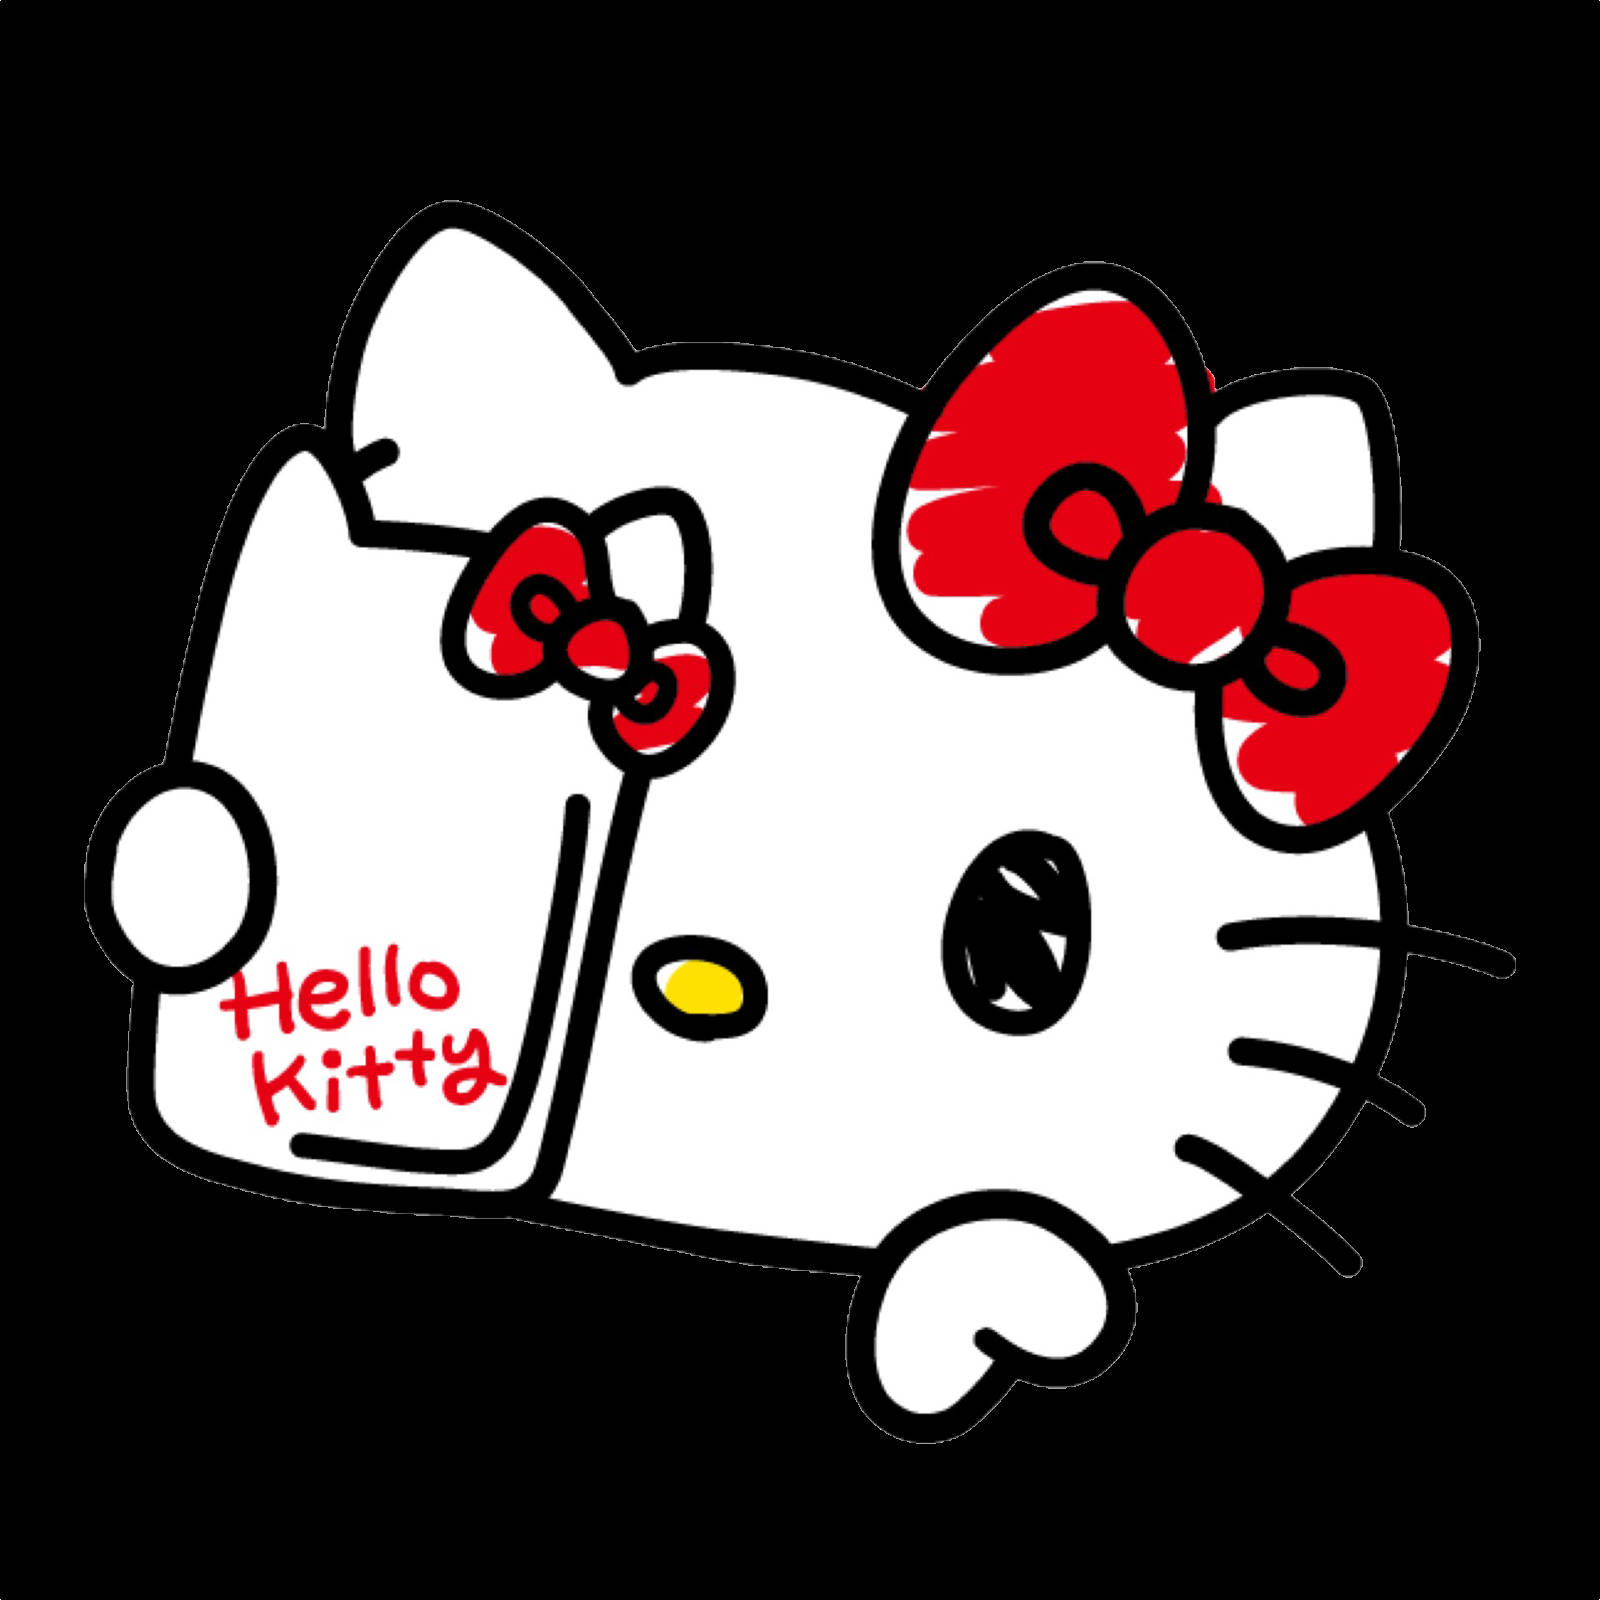 Selfie Cartoon Hello Kitty Pfp Picture